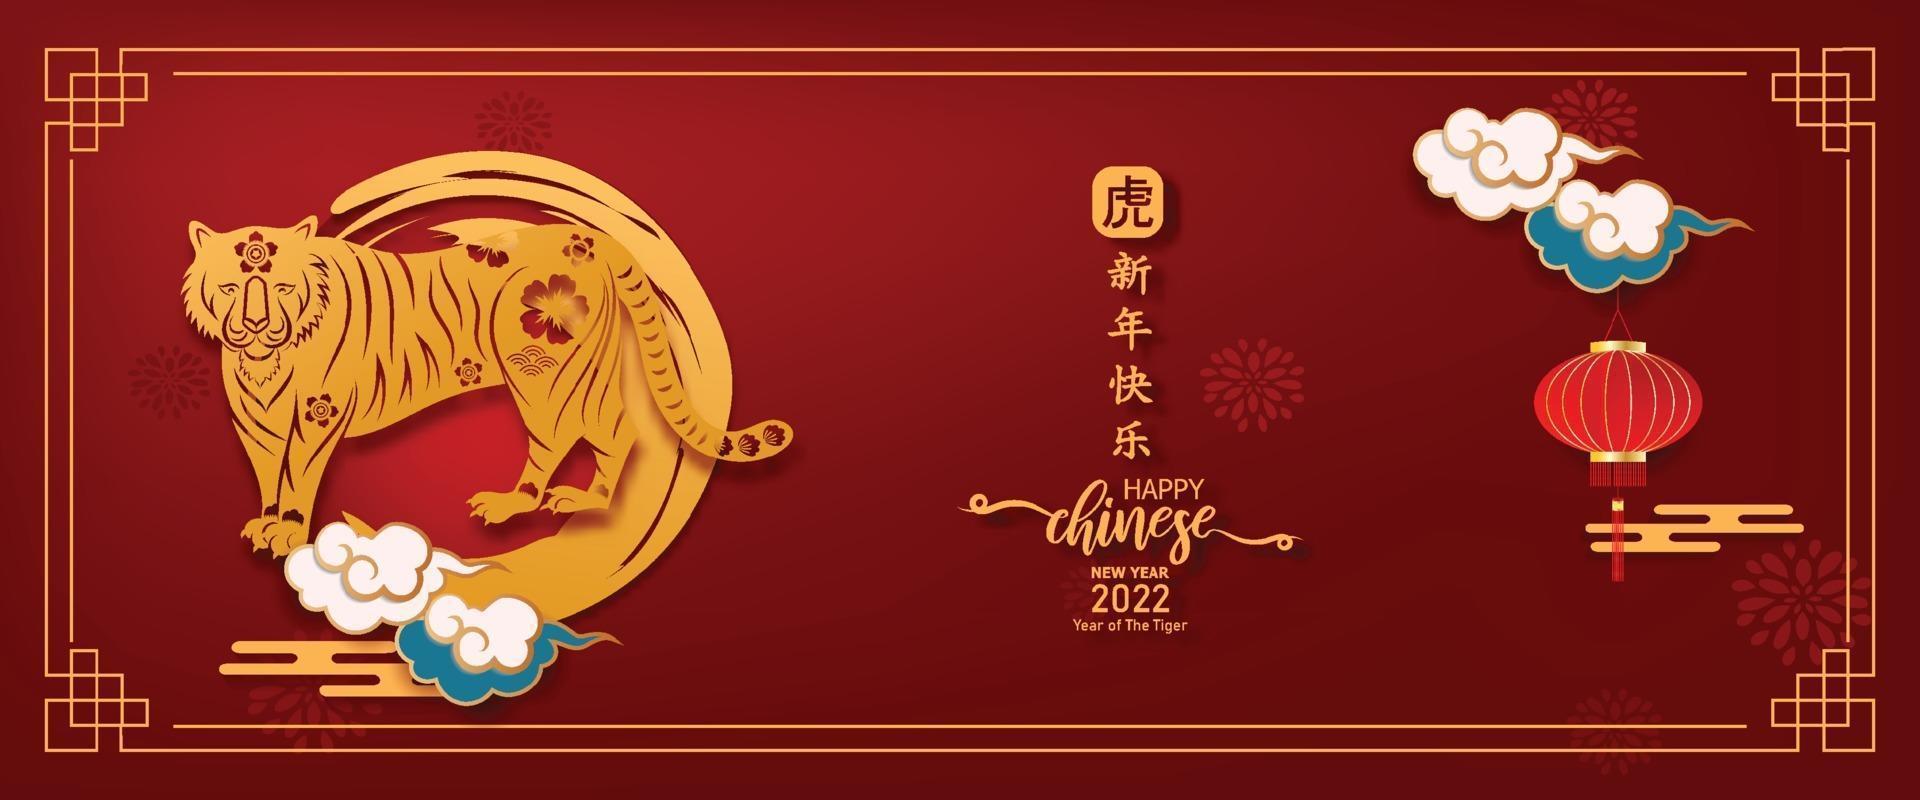 banner 2022 año nuevo chino. año del tigre con elementos asiáticos. vector